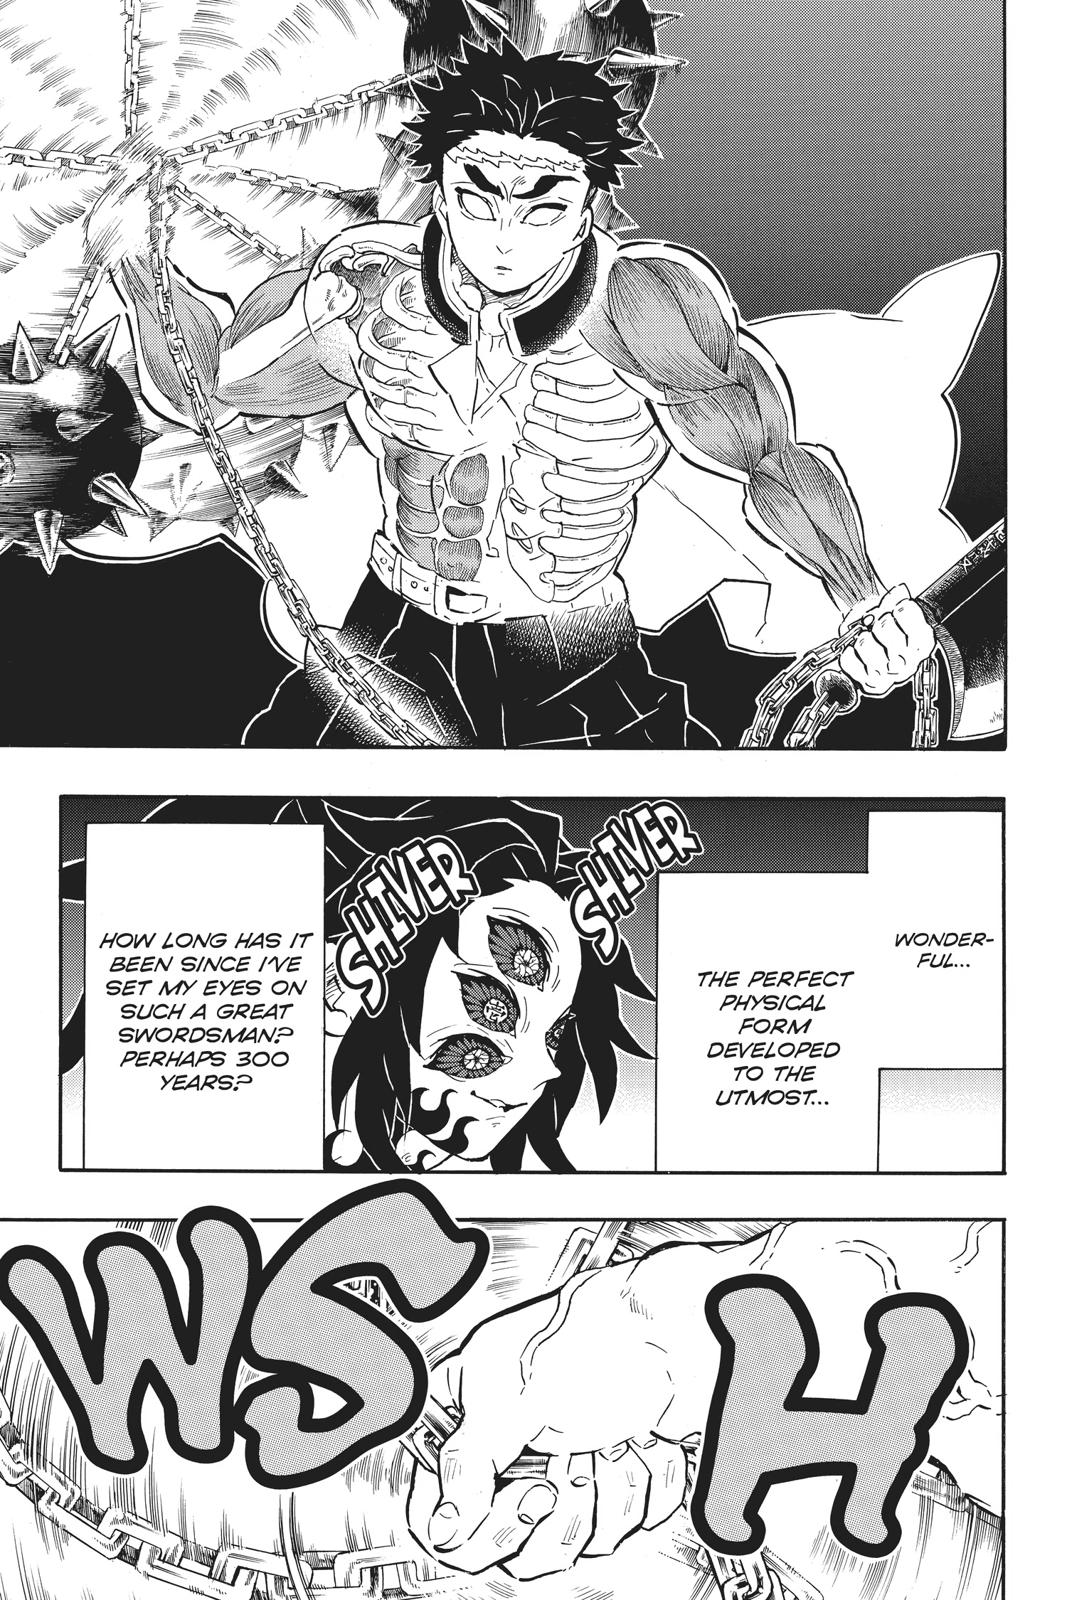 Demon Slayer Manga Manga Chapter - 169 - image 3